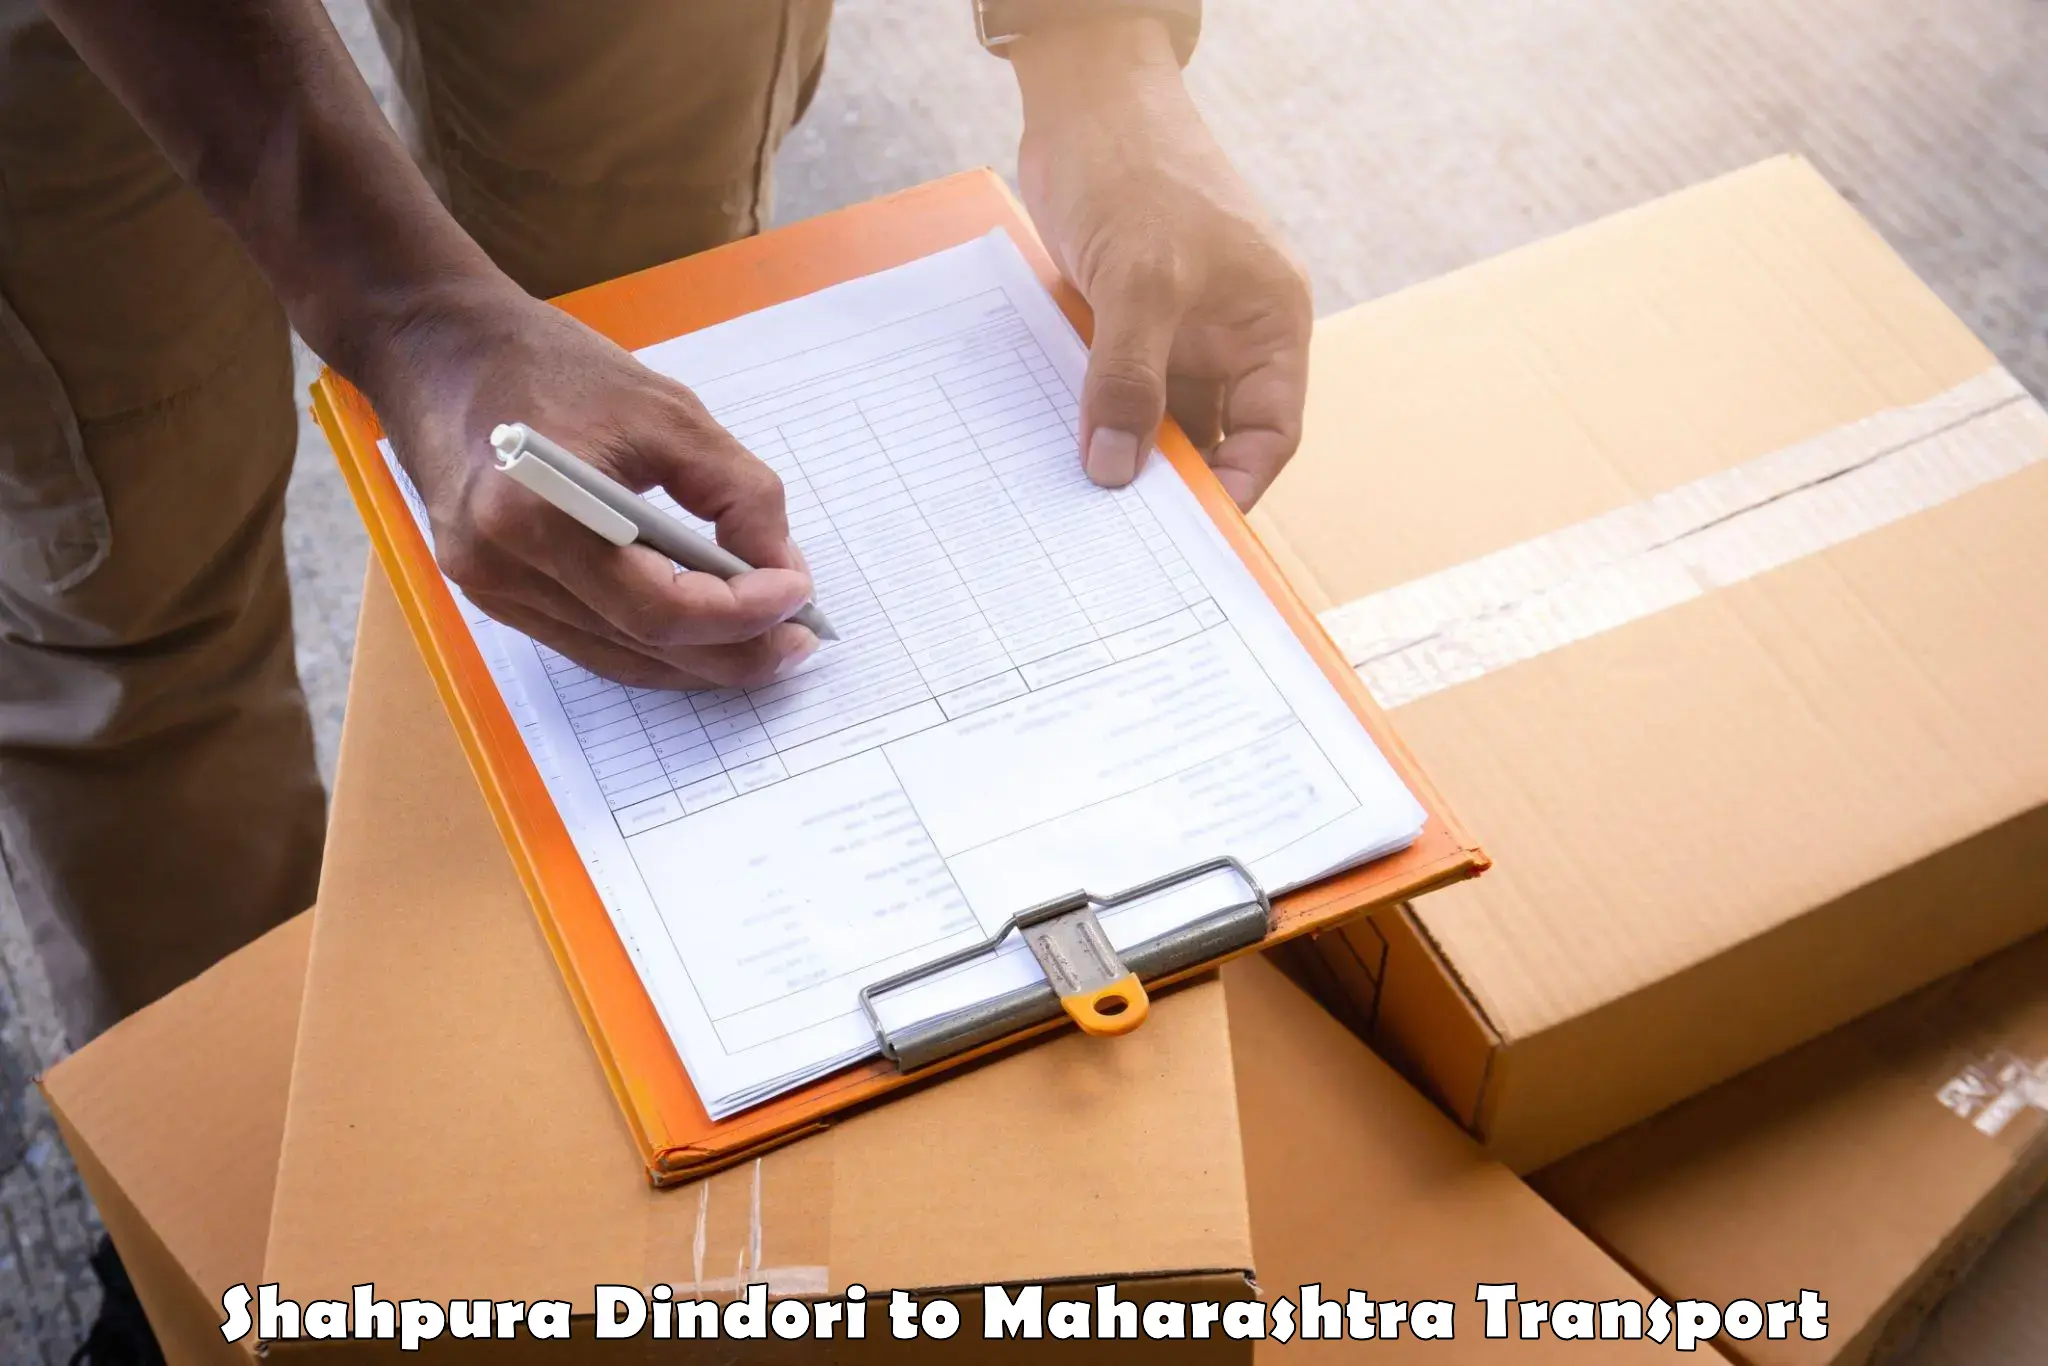 Delivery service Shahpura Dindori to Borivali